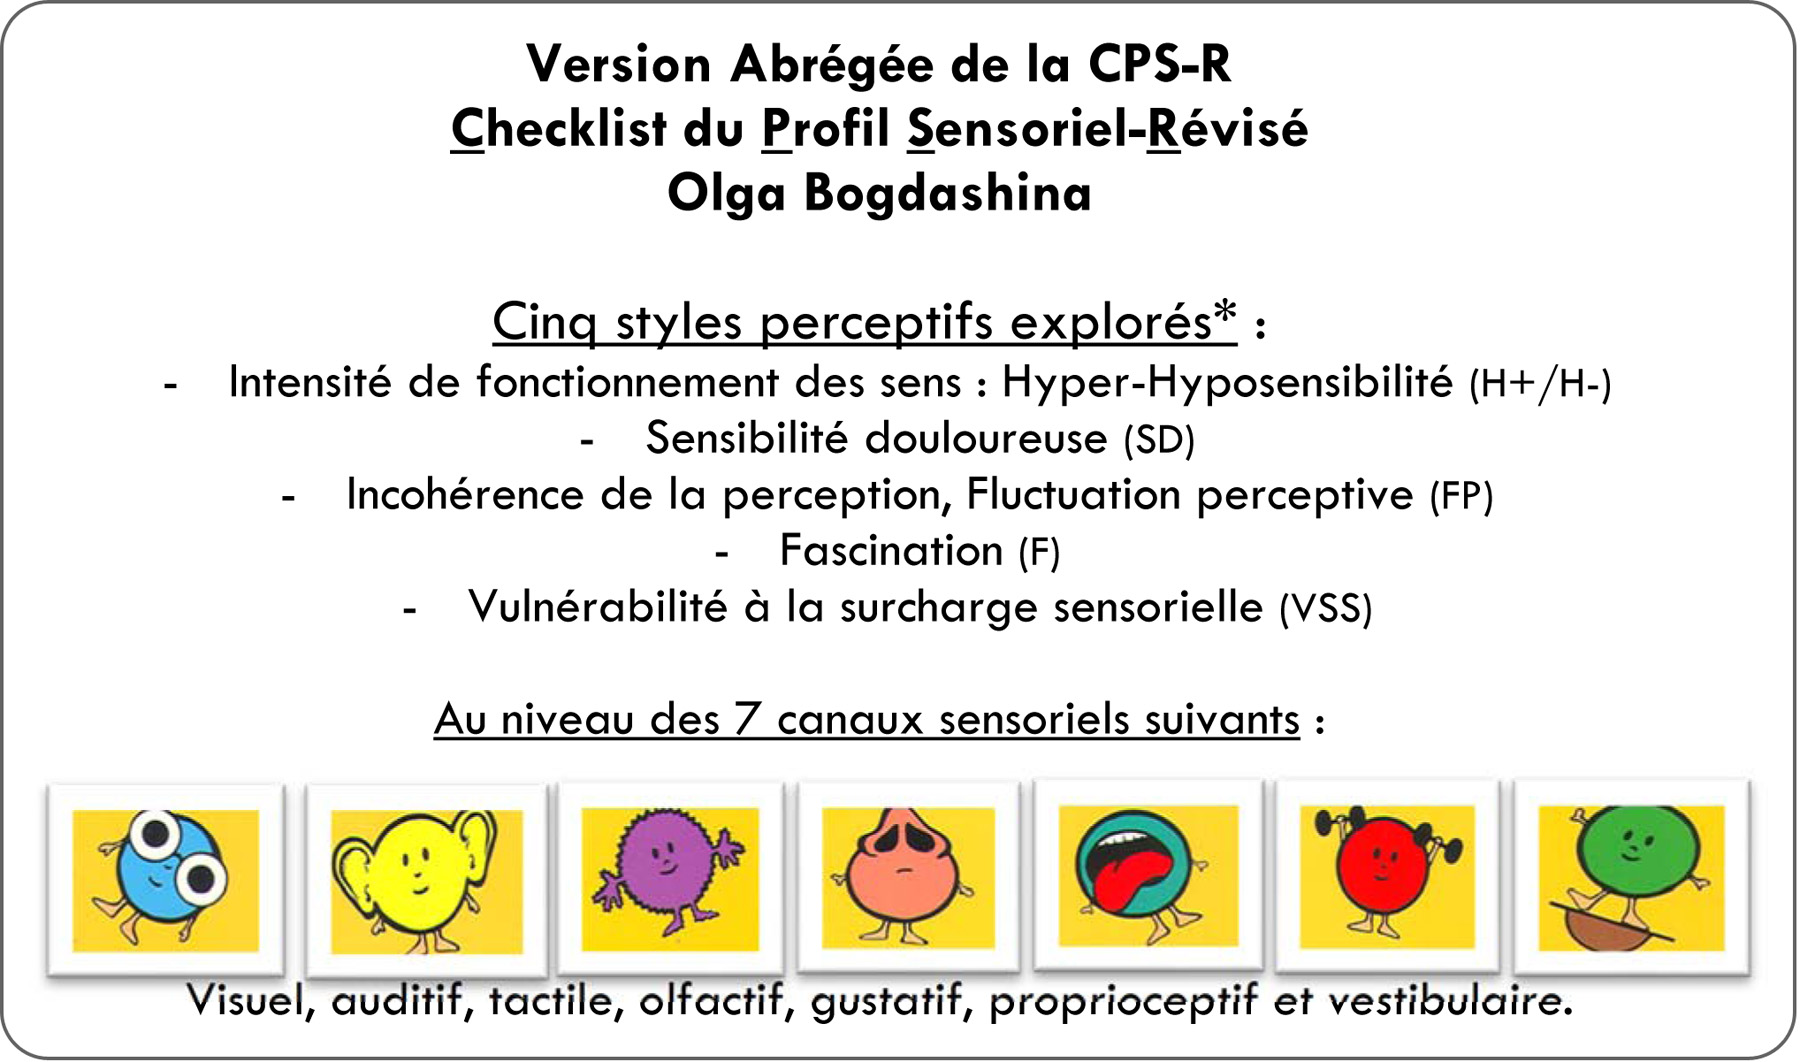 Version abrge de la CPS-R Checklist du Profil Sensoriel Rvise